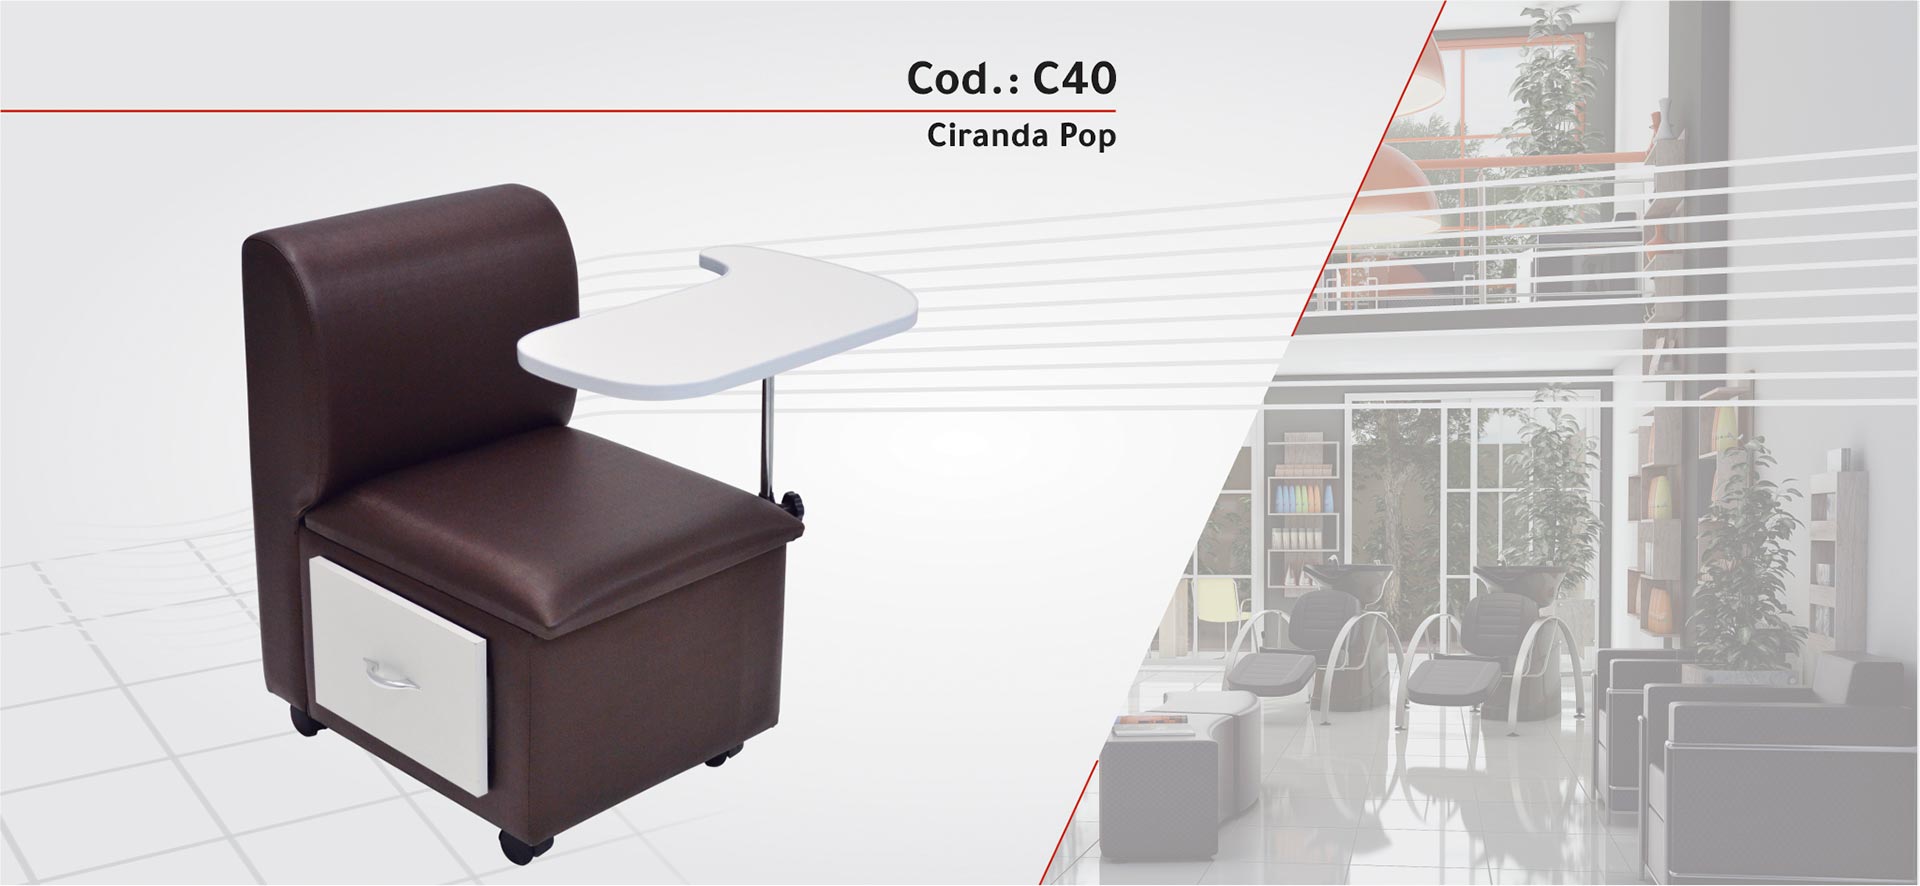 C40 - Ciranda Pop